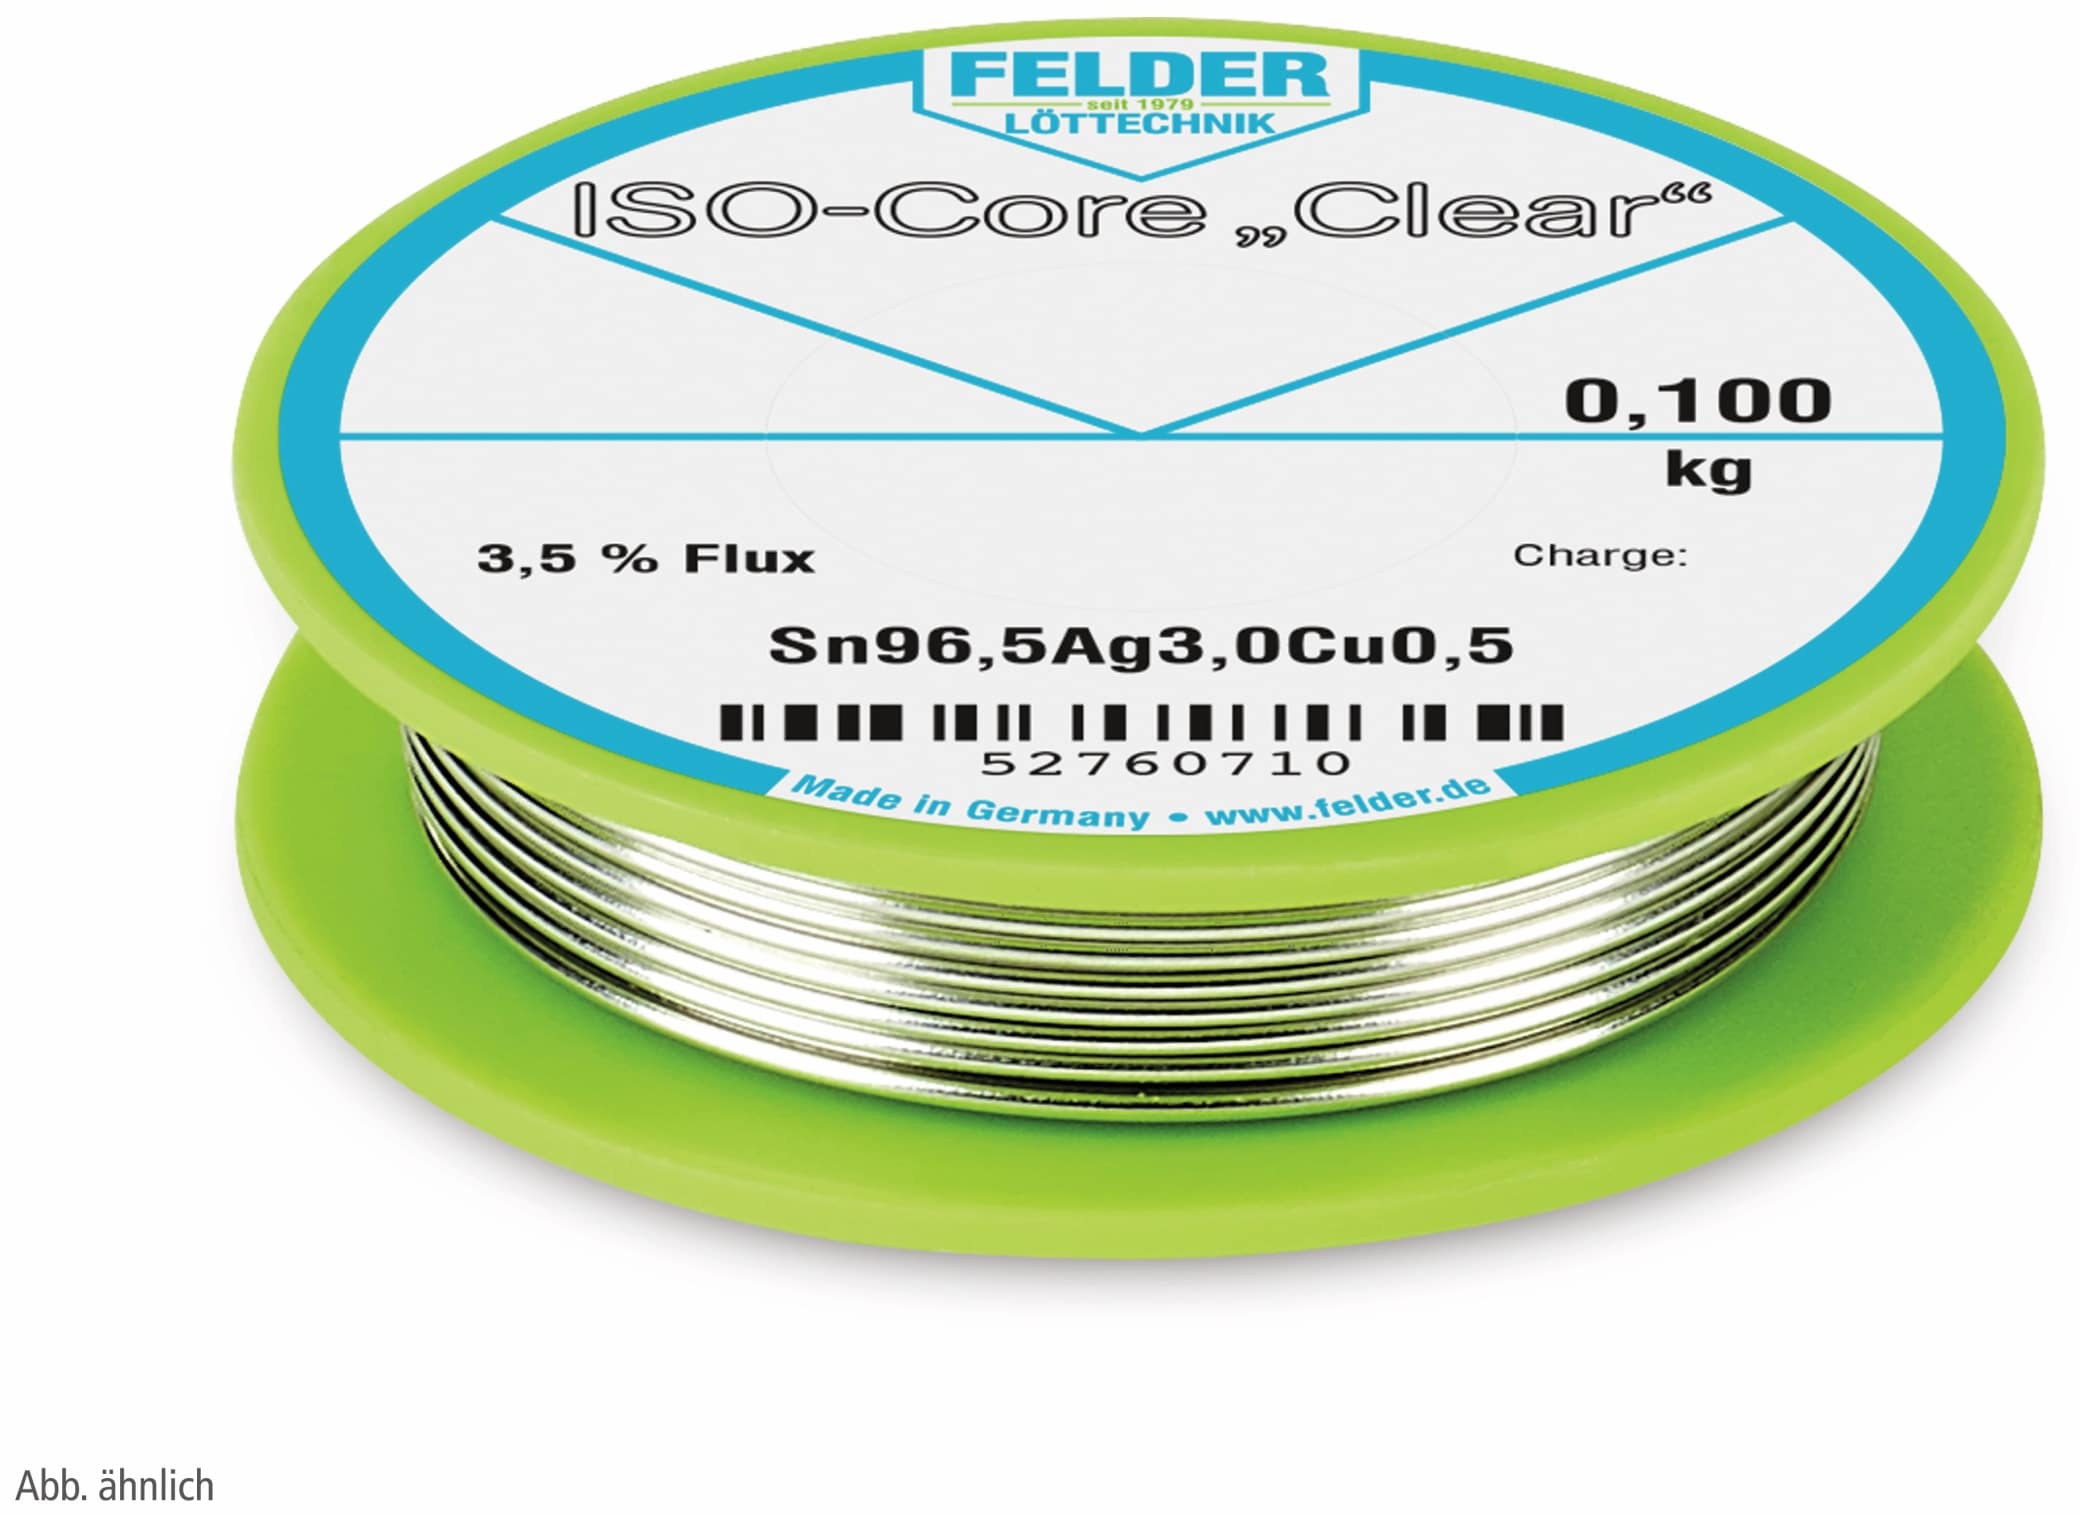 FELDER LÖTTECHNIK Lötdraht ISO-Core "Clear", 0,75 mm, 100 g